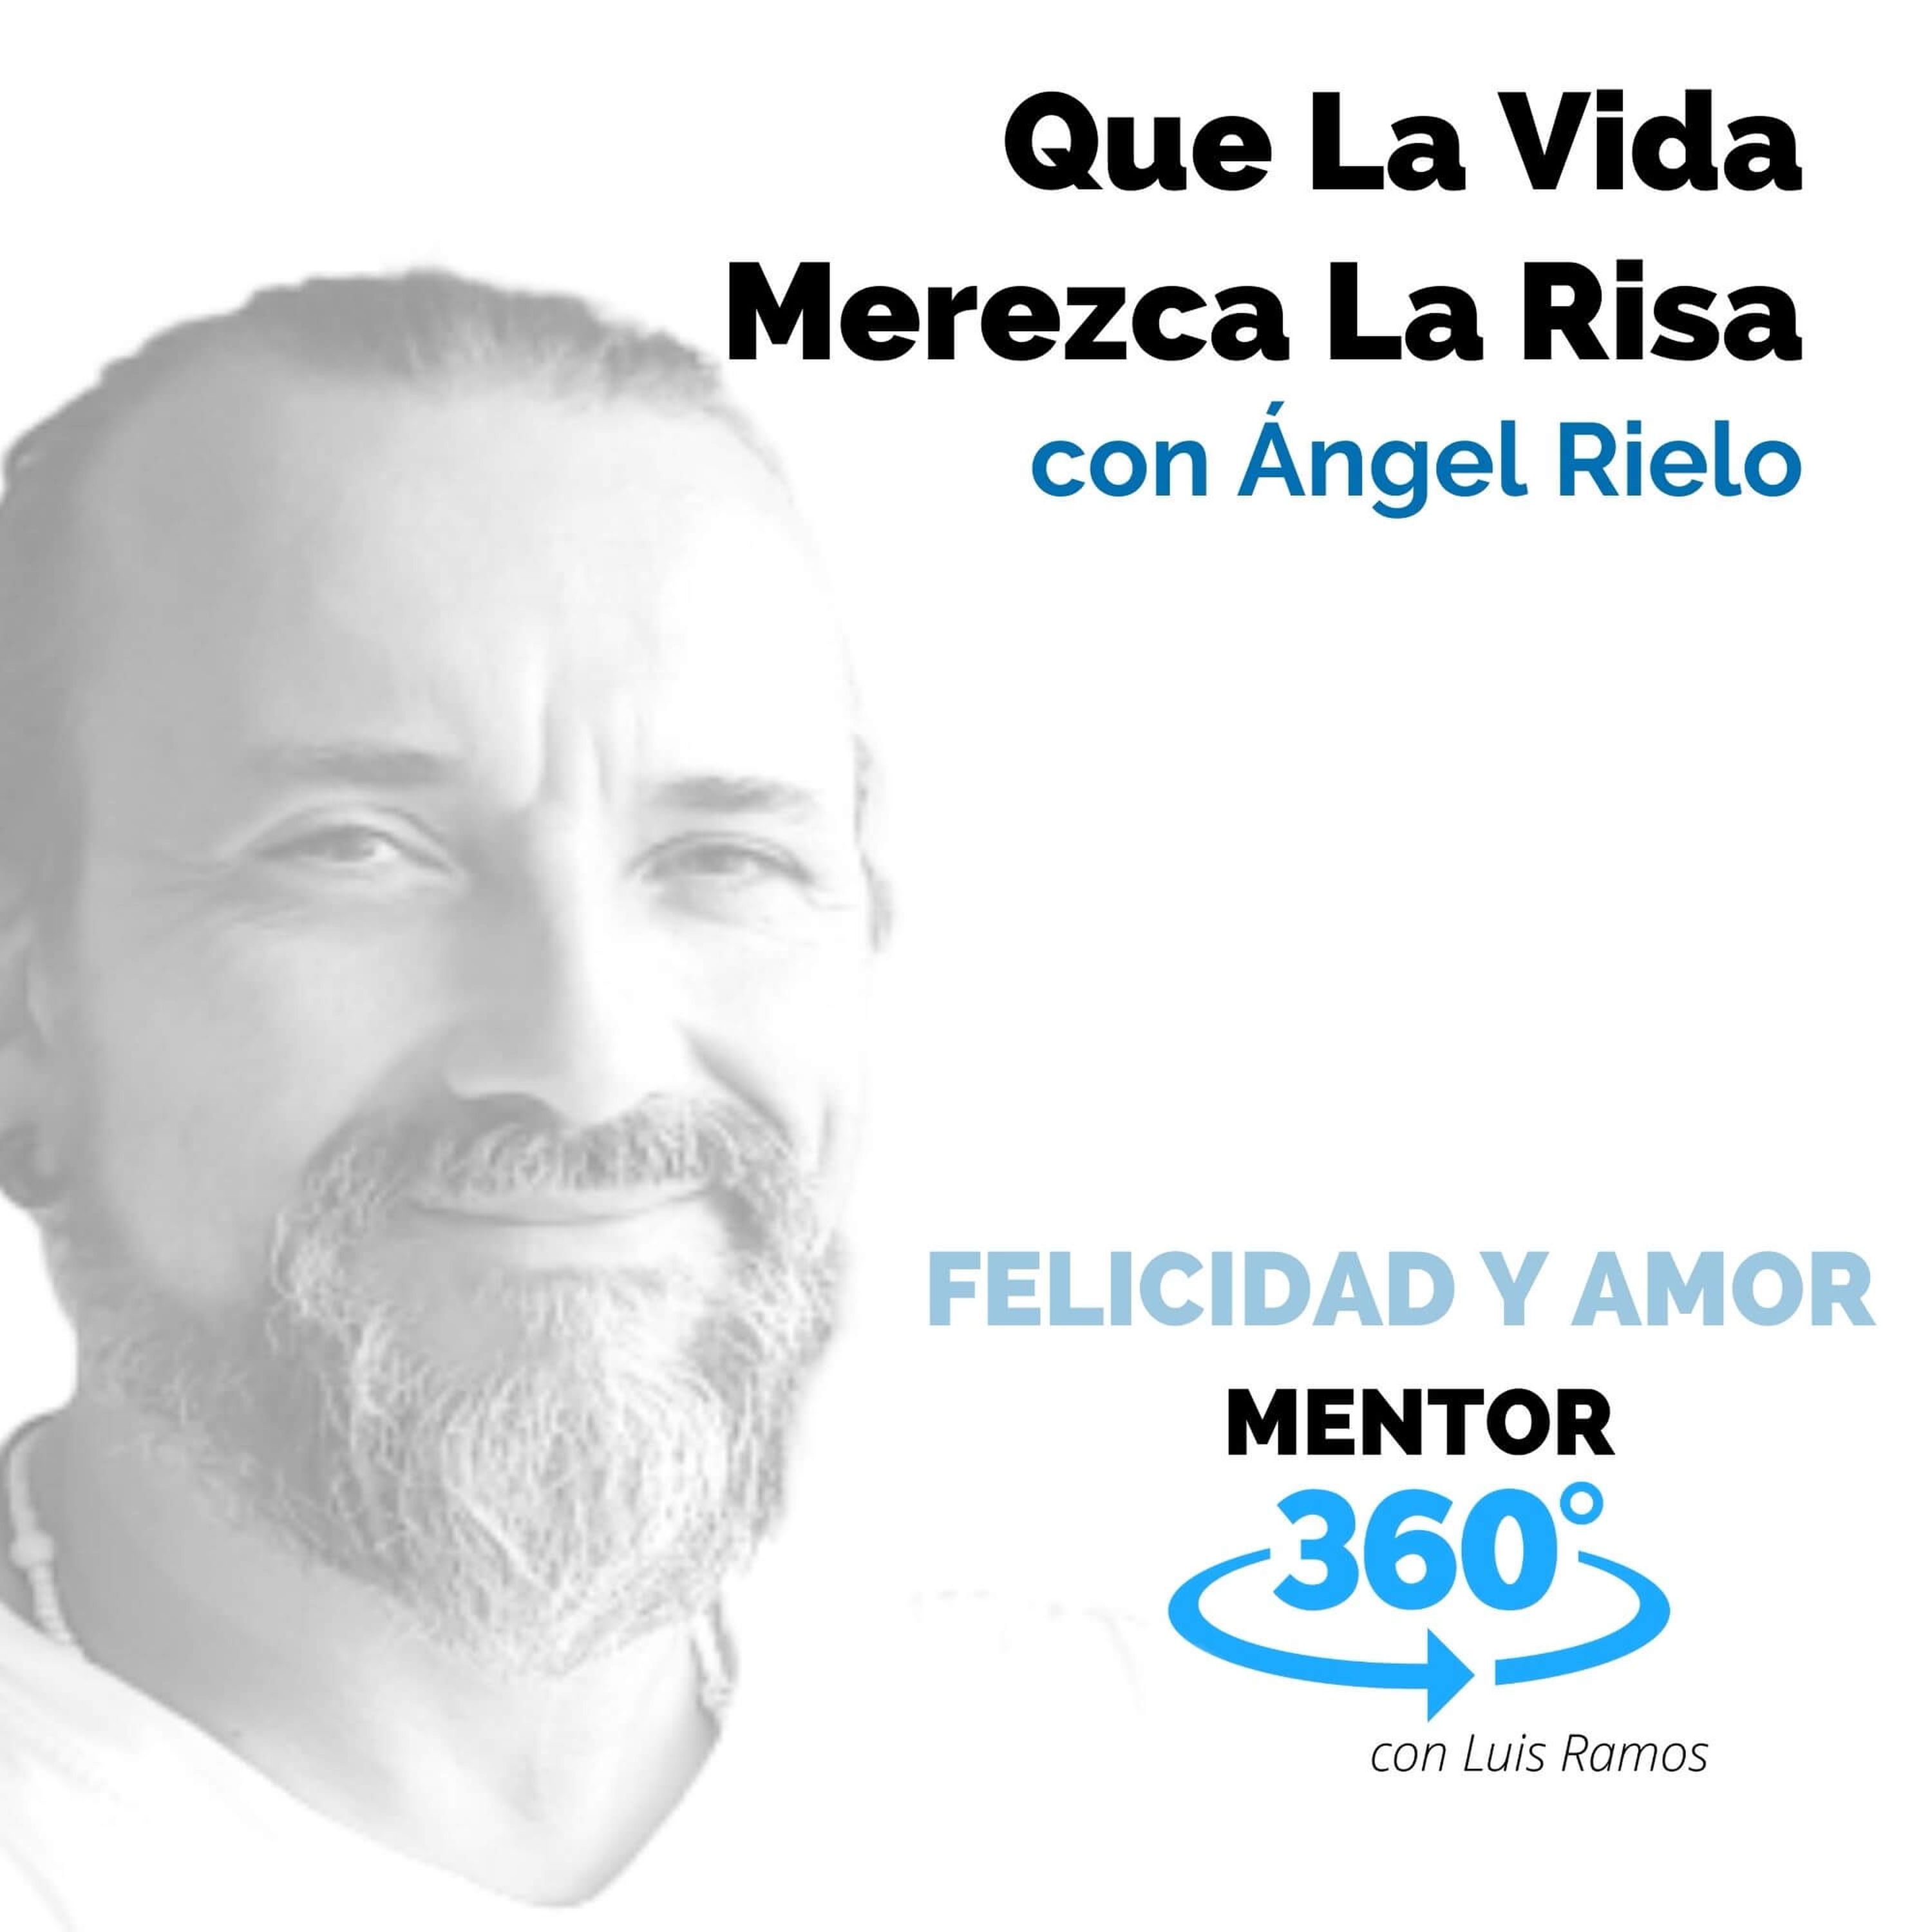 Que La Vida Merezca La Risa, con Ángel Rielo - MENTOR360